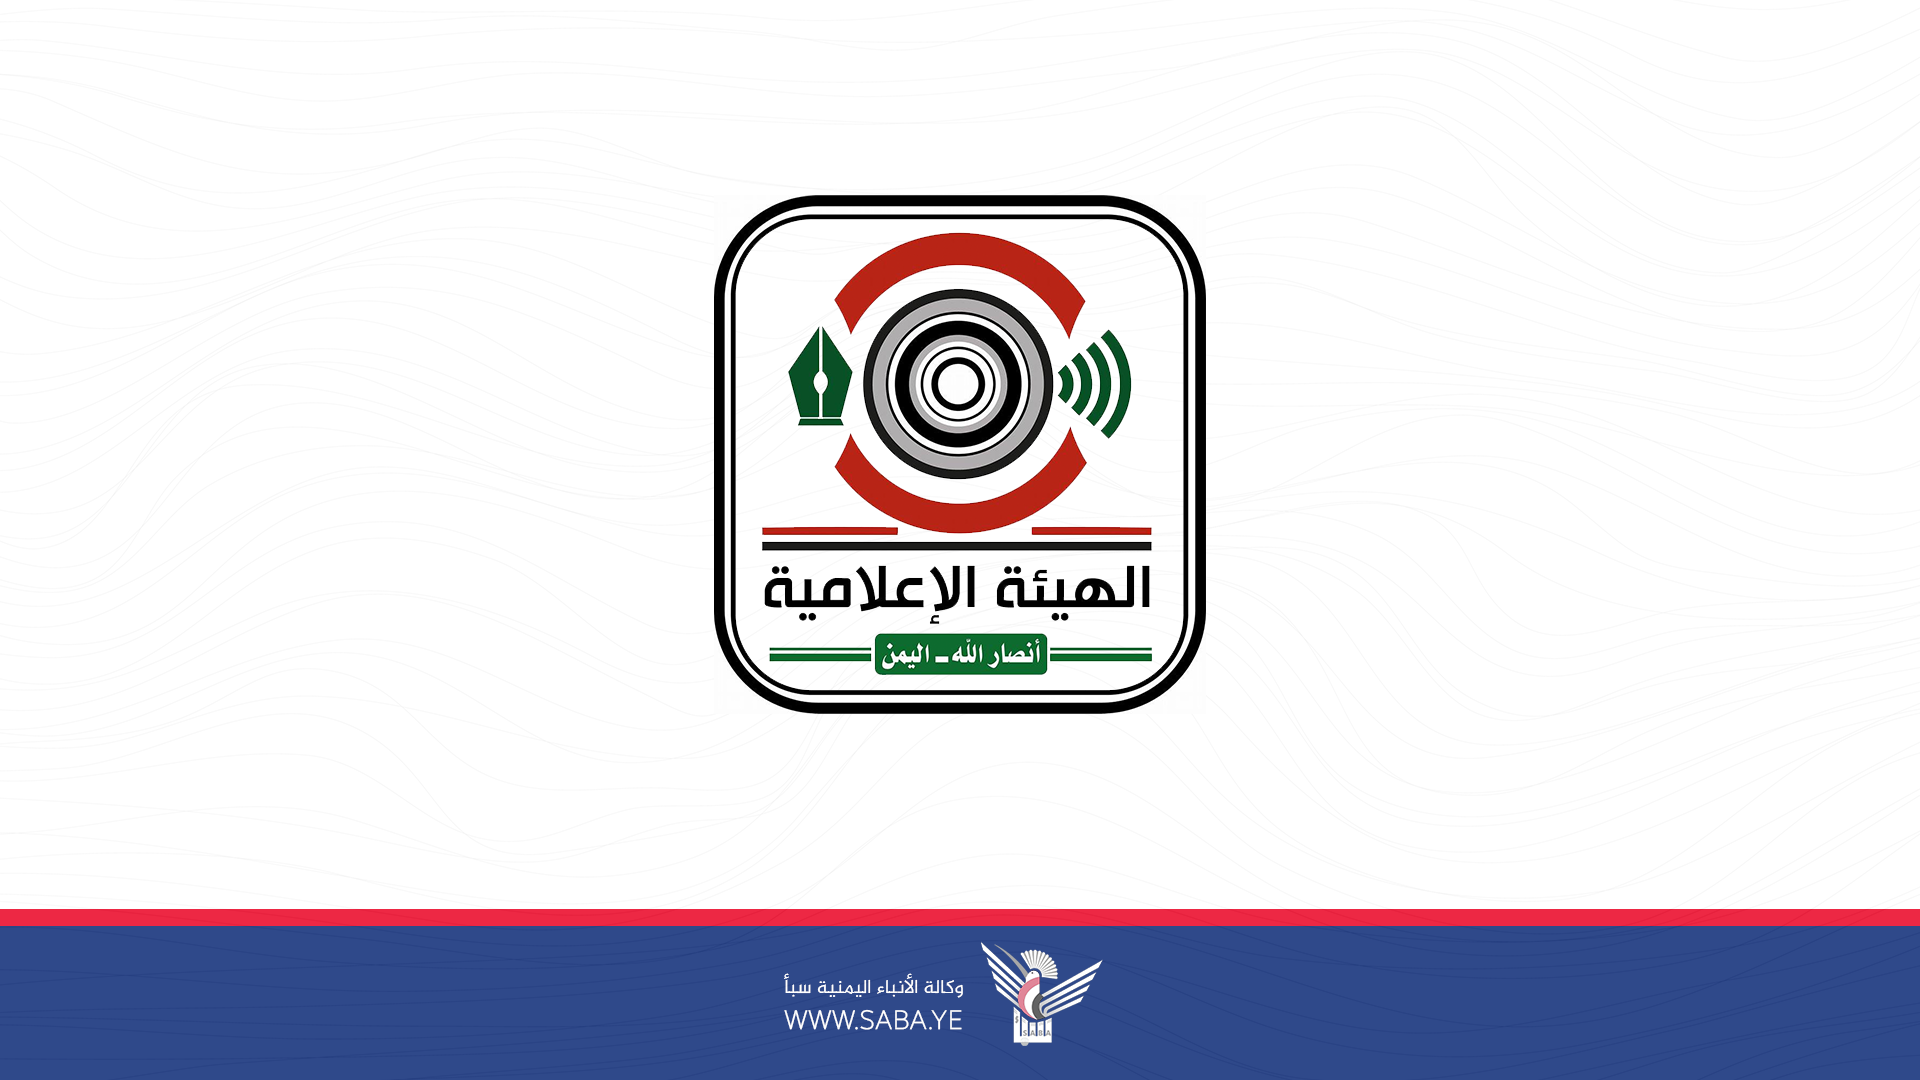 الهيئة الإعلامية لأنصار الله تدين استهداف فريق قناة الميادين في جنوب لبنان